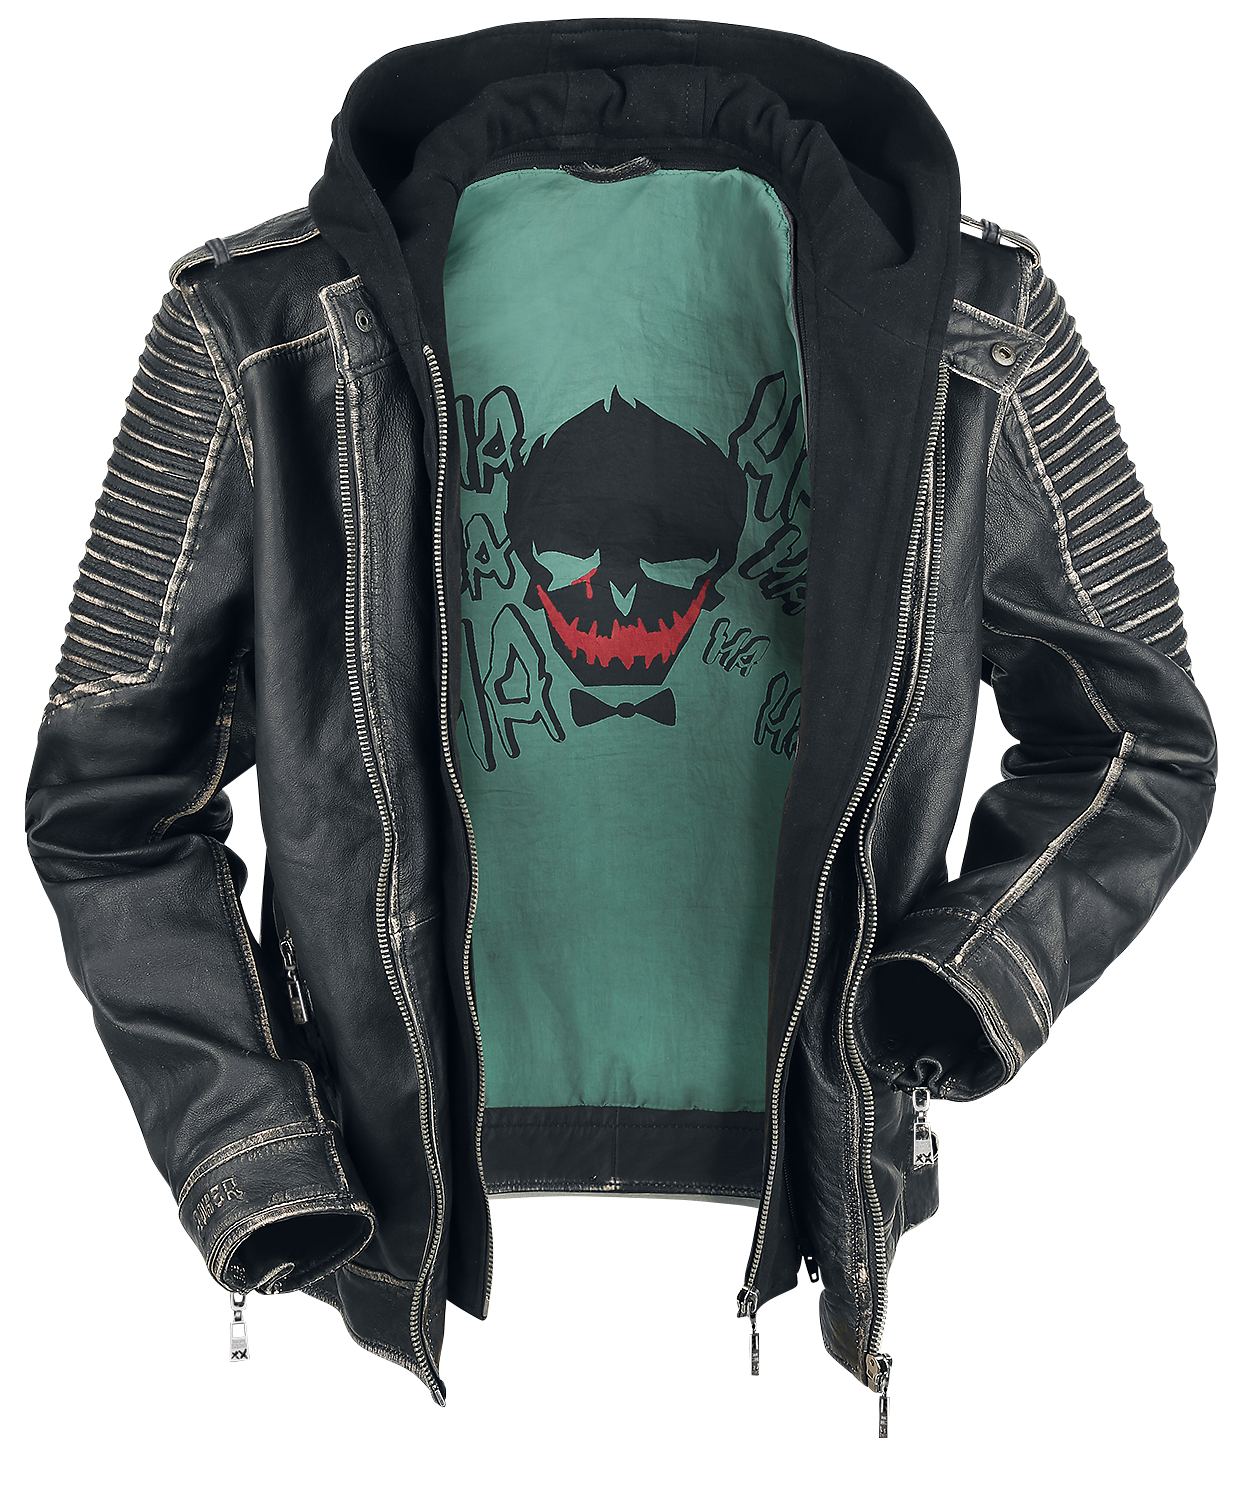 Suicide Squad - DC Comics Lederjacke - The Joker - S bis 3XL - für Männer - Größe L - schwarz  - EMP exklusives Merchandise!